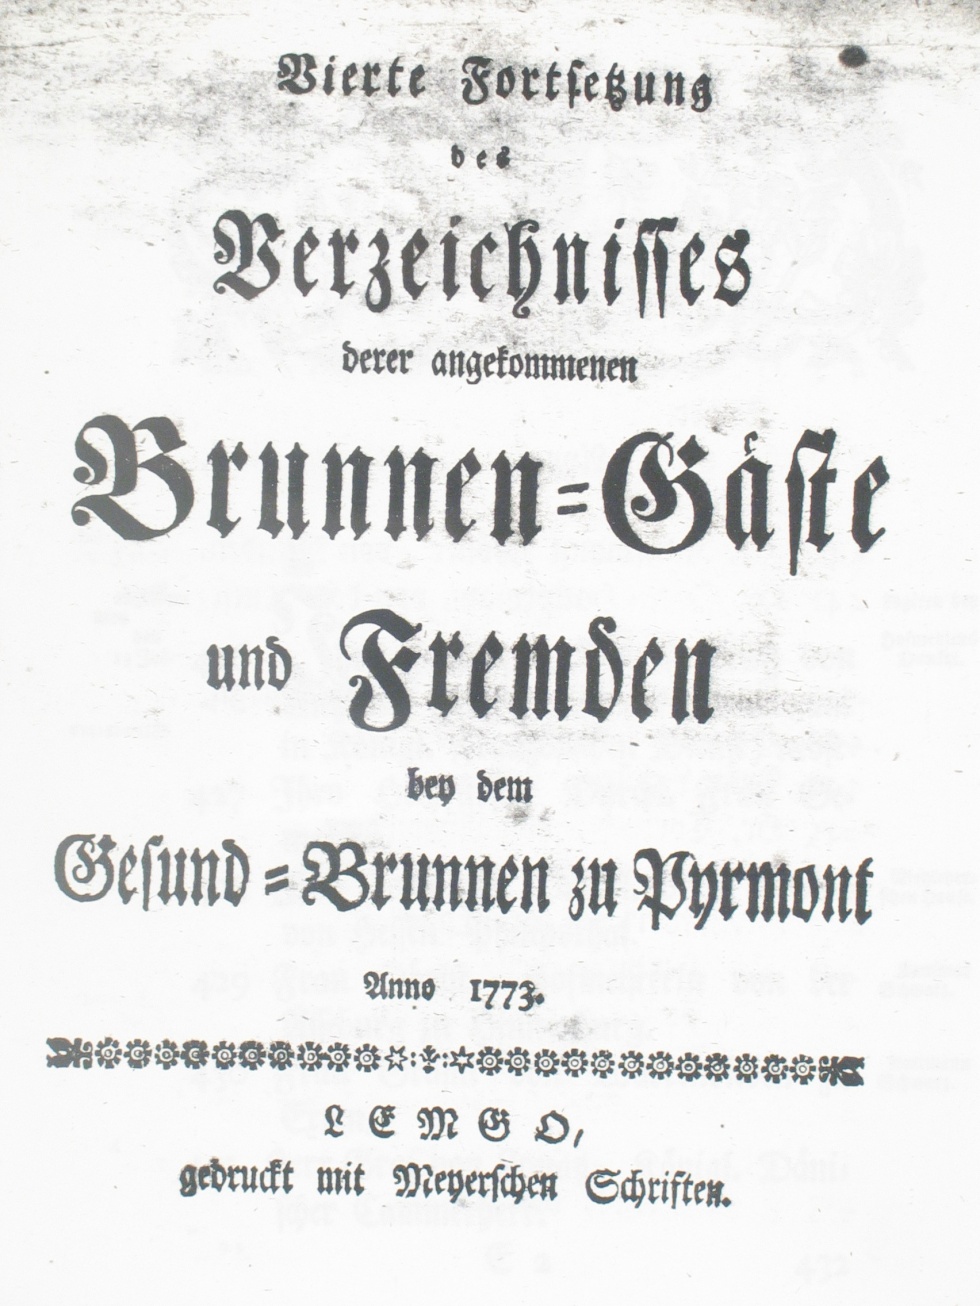 Gesund-Brunnen zu Pyrmont Anno 1773 - vierte Fortsetzung (Museum im Schloss Bad Pyrmont CC BY-NC-SA)